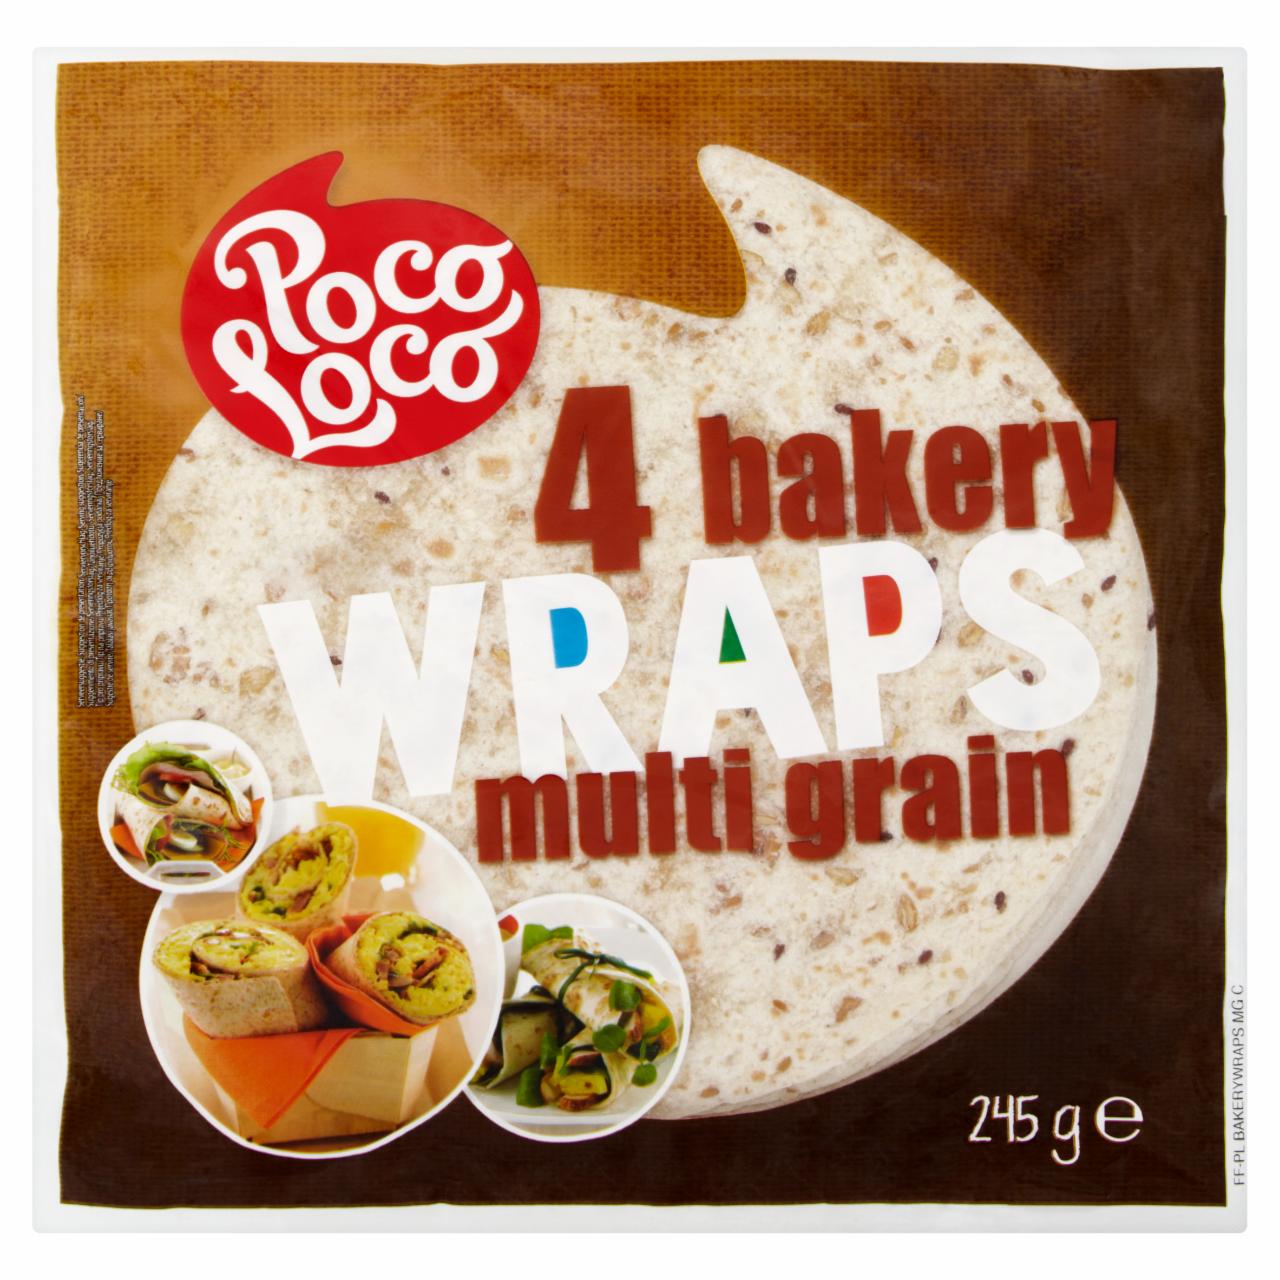 Képek - Poco Loco sokmagos tortilla 245 g